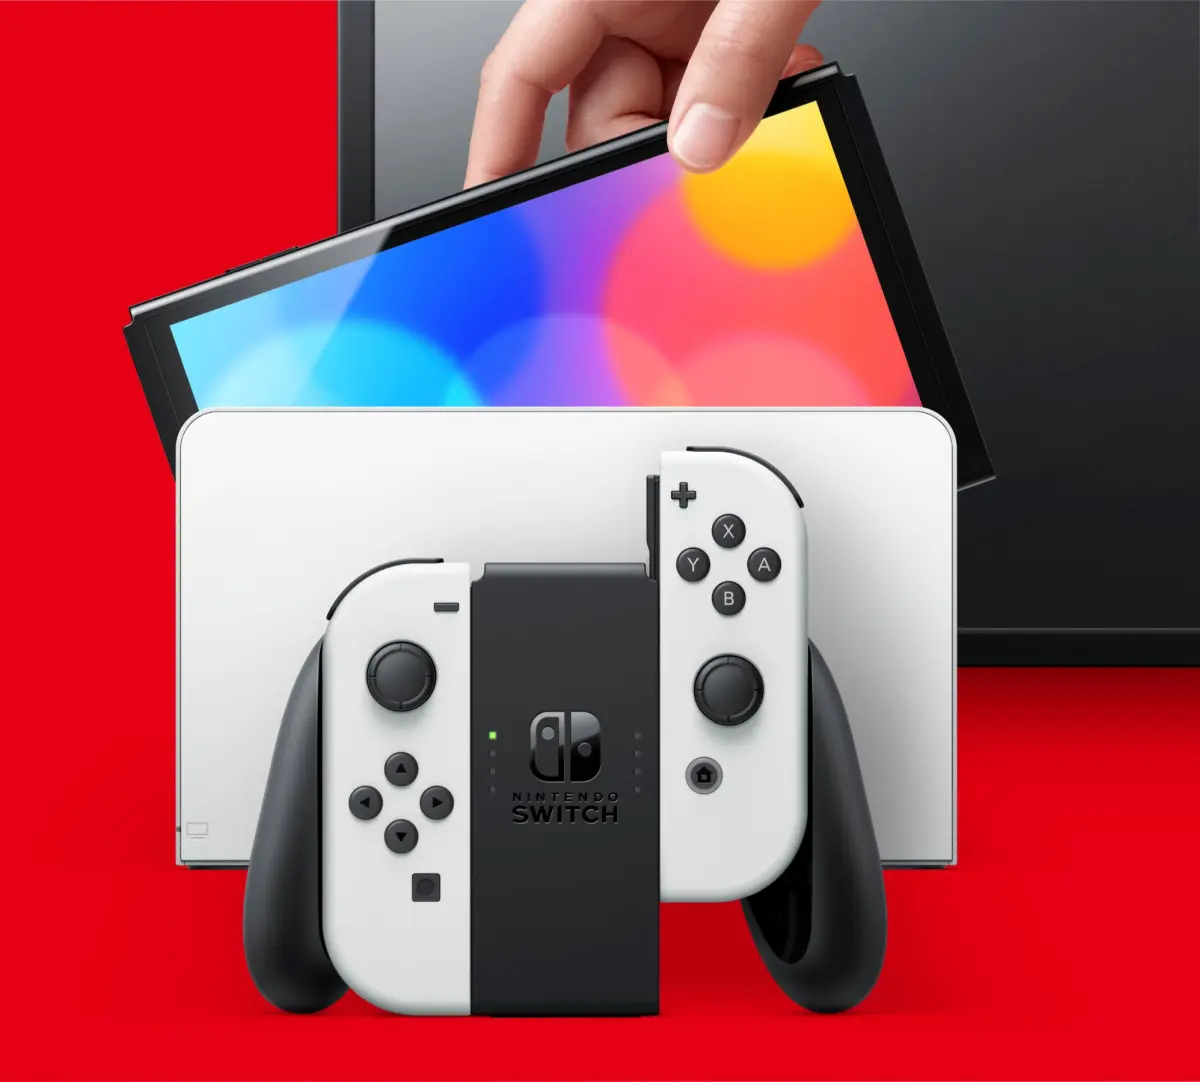 Su Nintendo Switch 2 saranno disponibili numerosi titoli multipiattaforma